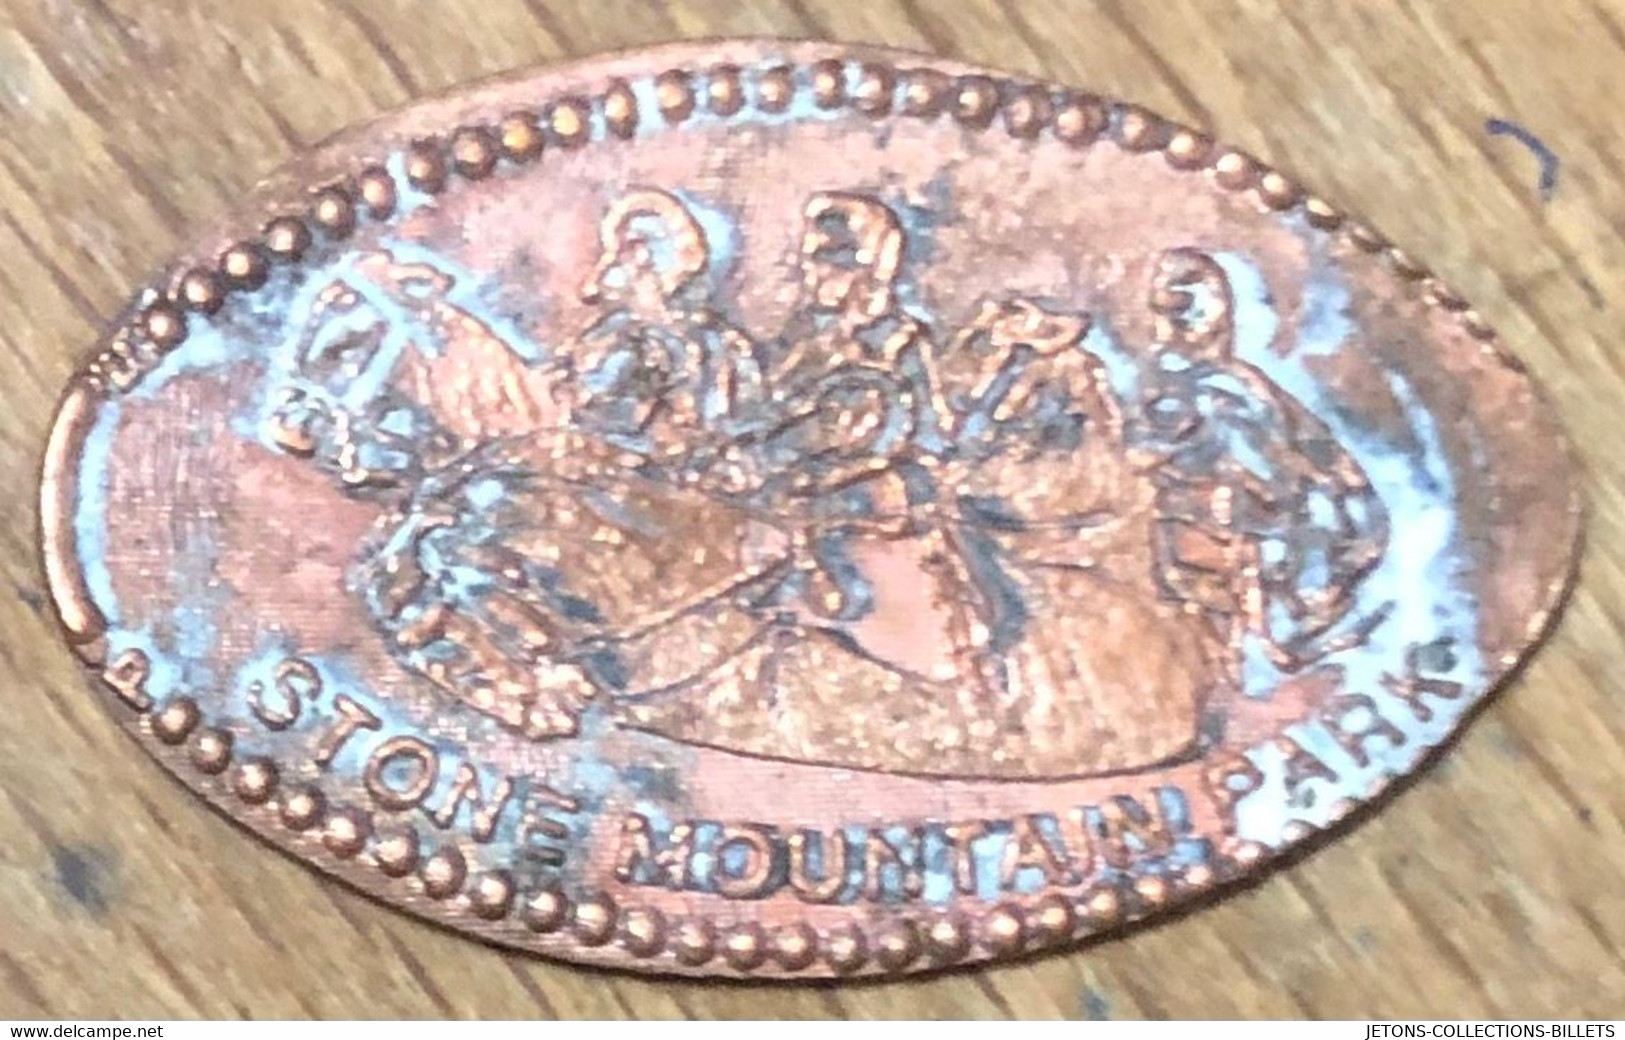 ÉTATS-UNIS USA STONE MOUNTAIN PARK PIÈCE ÉCRASÉE PENNY ELONGATED COIN MEDAILLE TOURISTIQUE MEDALS TOKENS - Elongated Coins